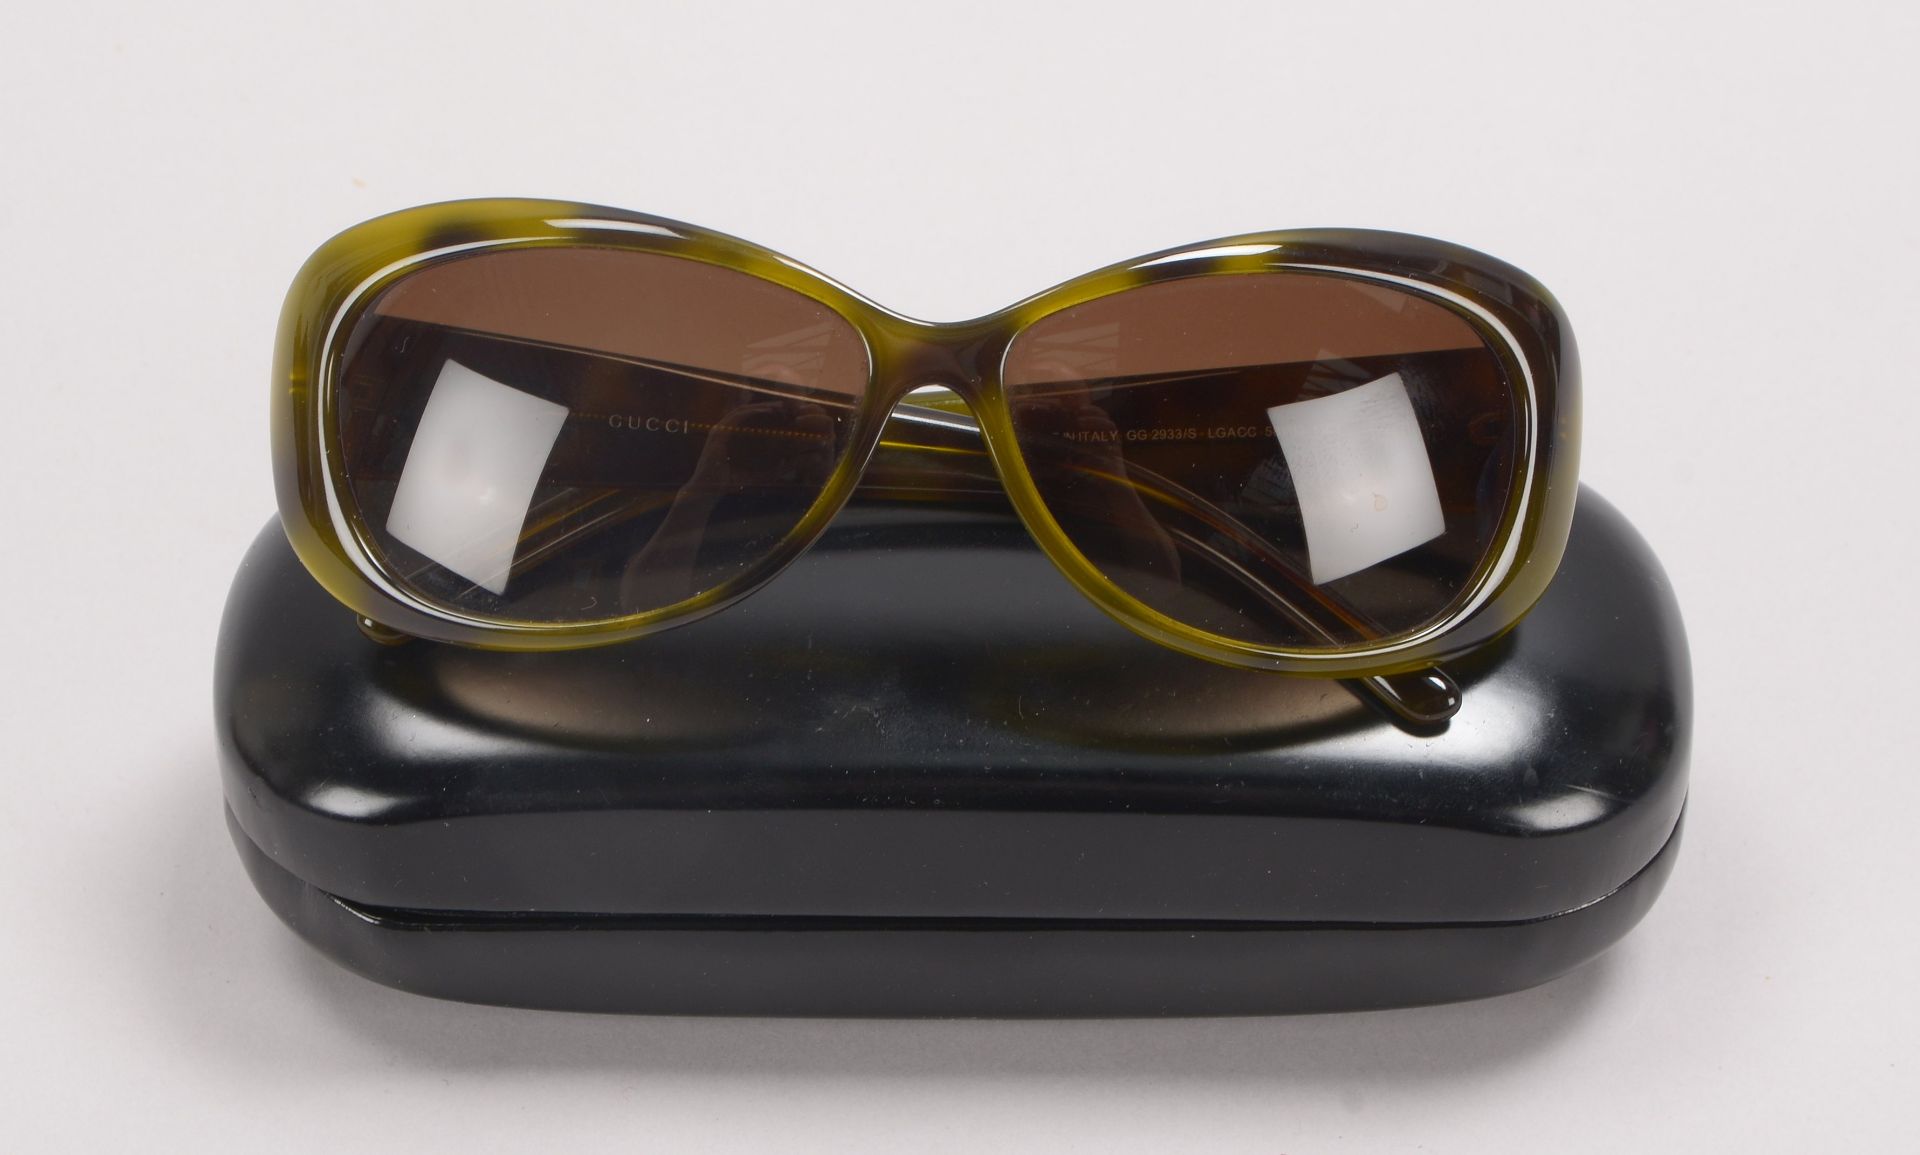 Gucci/Italien, Designer-Sonnenbrille, im Etui - in gepflegtem Zustand; Rahmenbreite 13,5 cm - Bild 3 aus 3